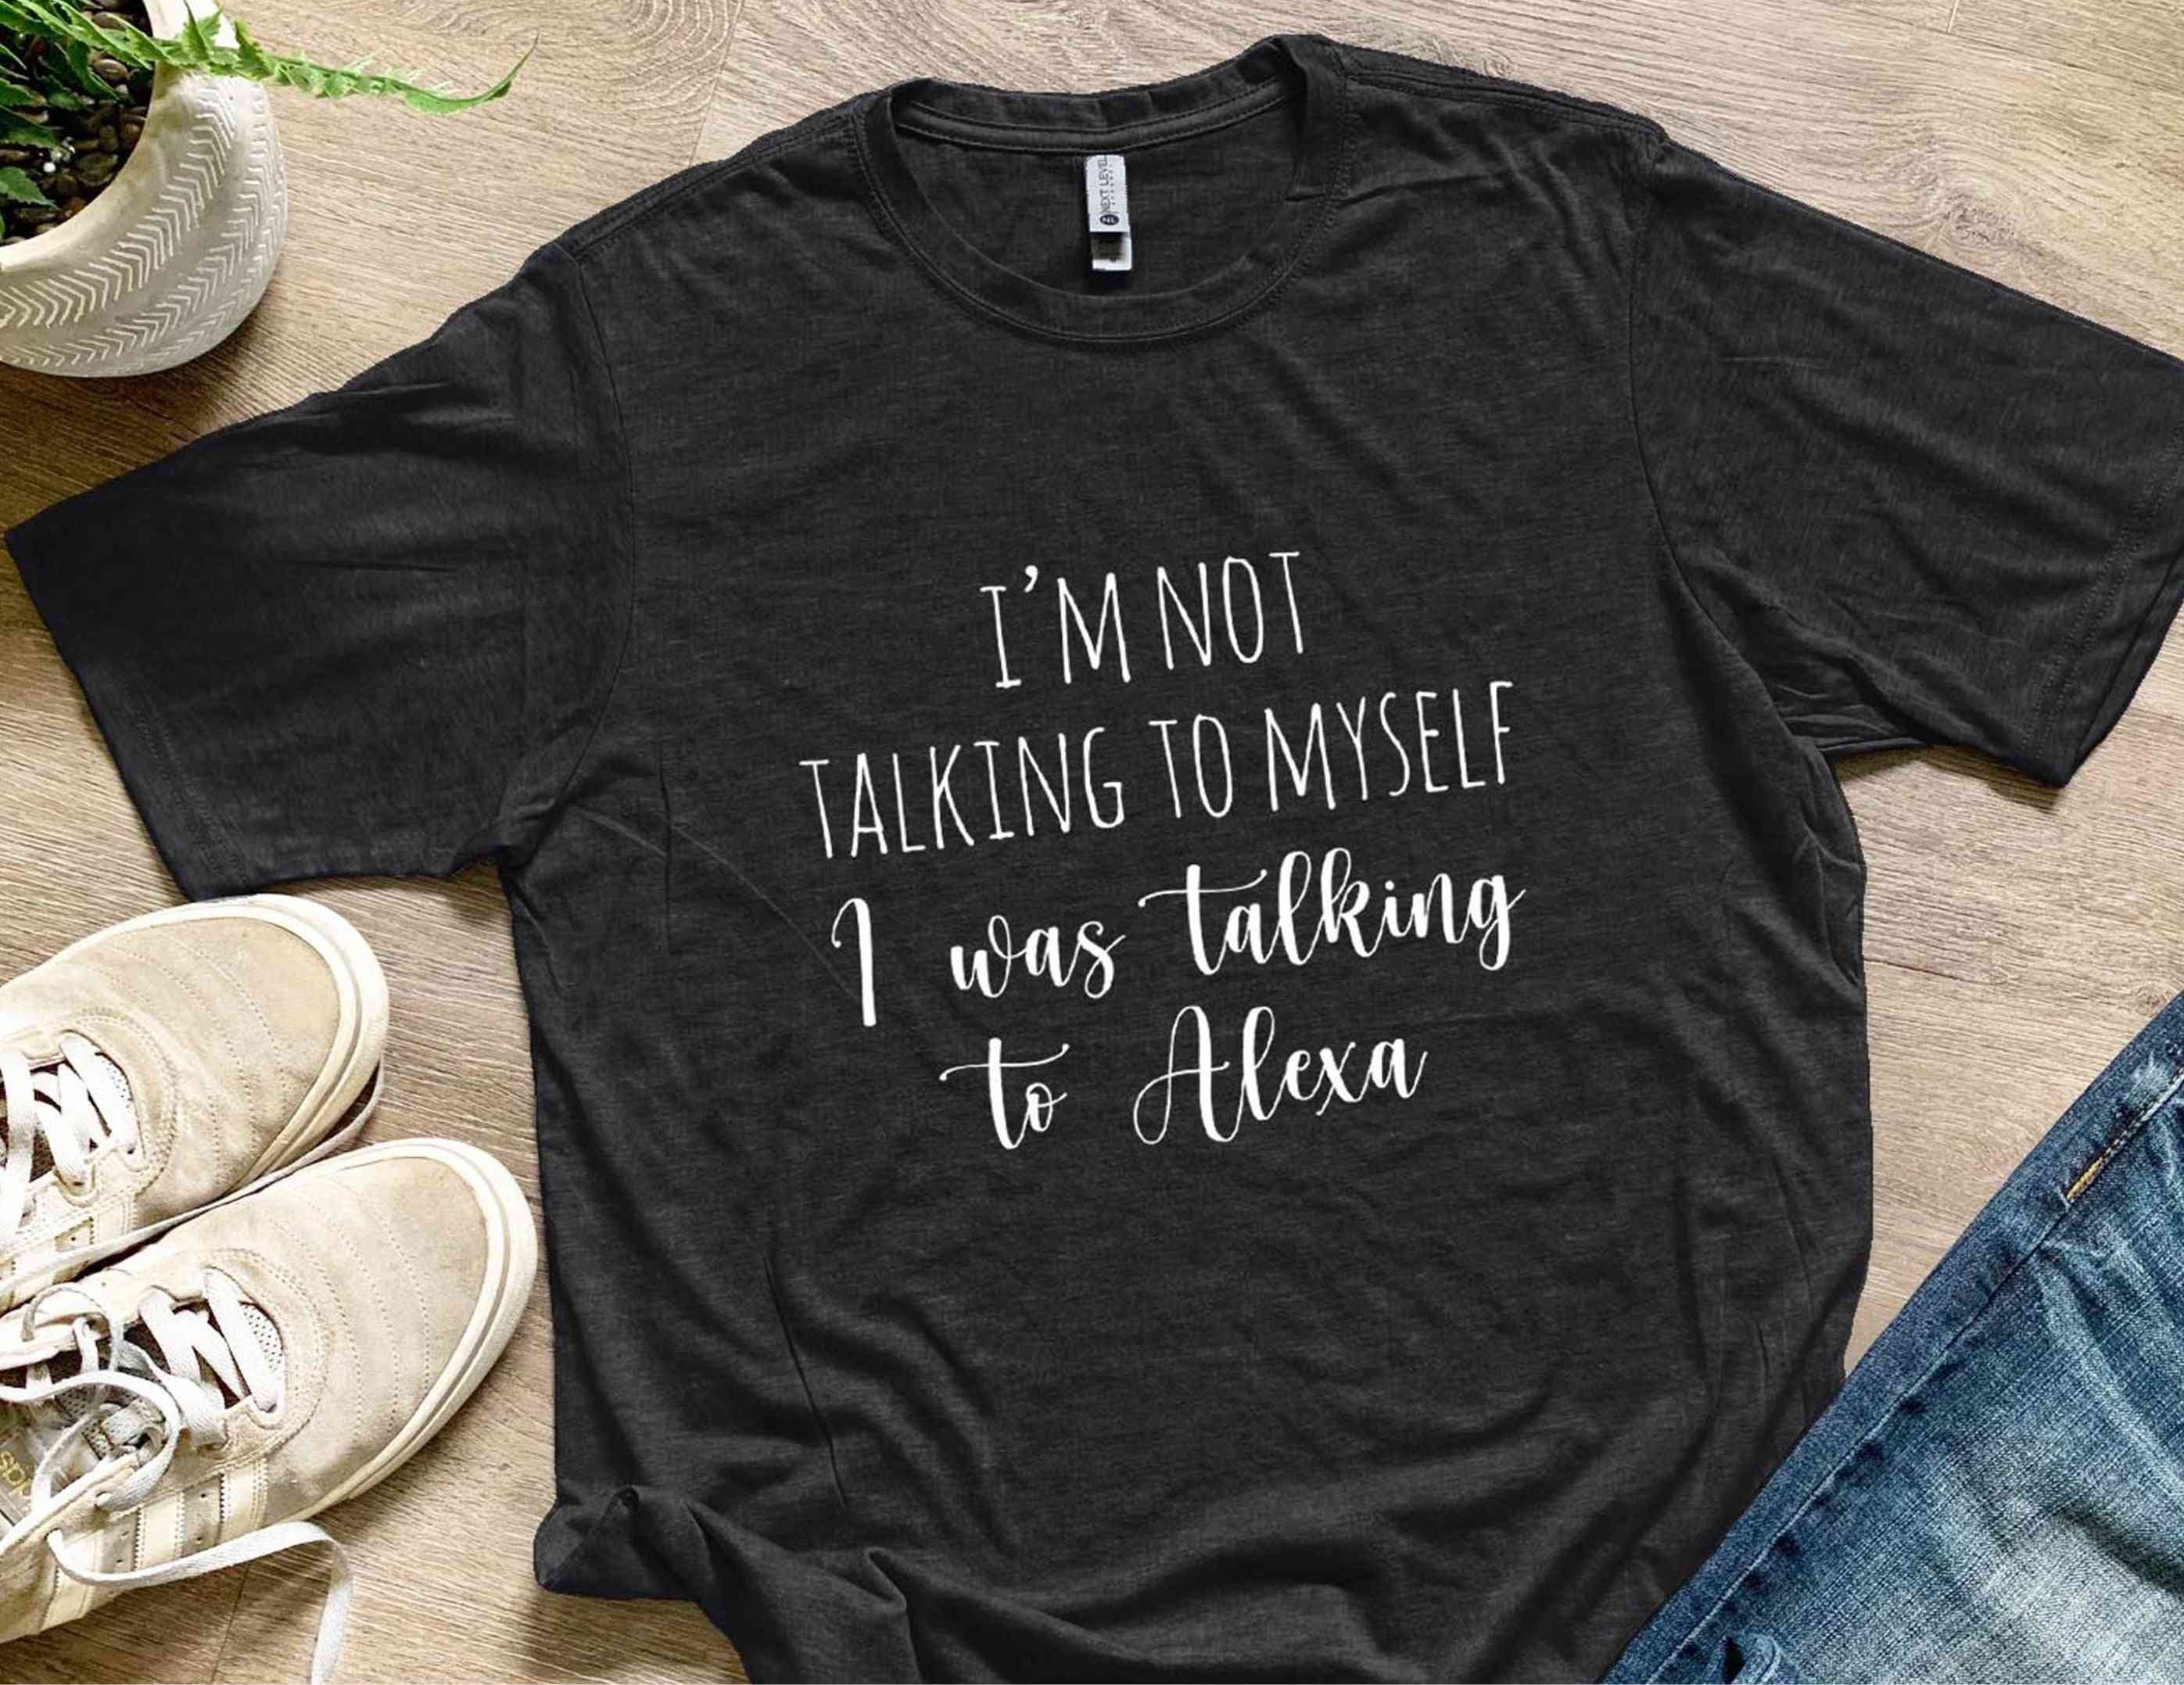 Nemluvím sám pro sebe mluvil jsem s košilemi alexa batolatami ženami